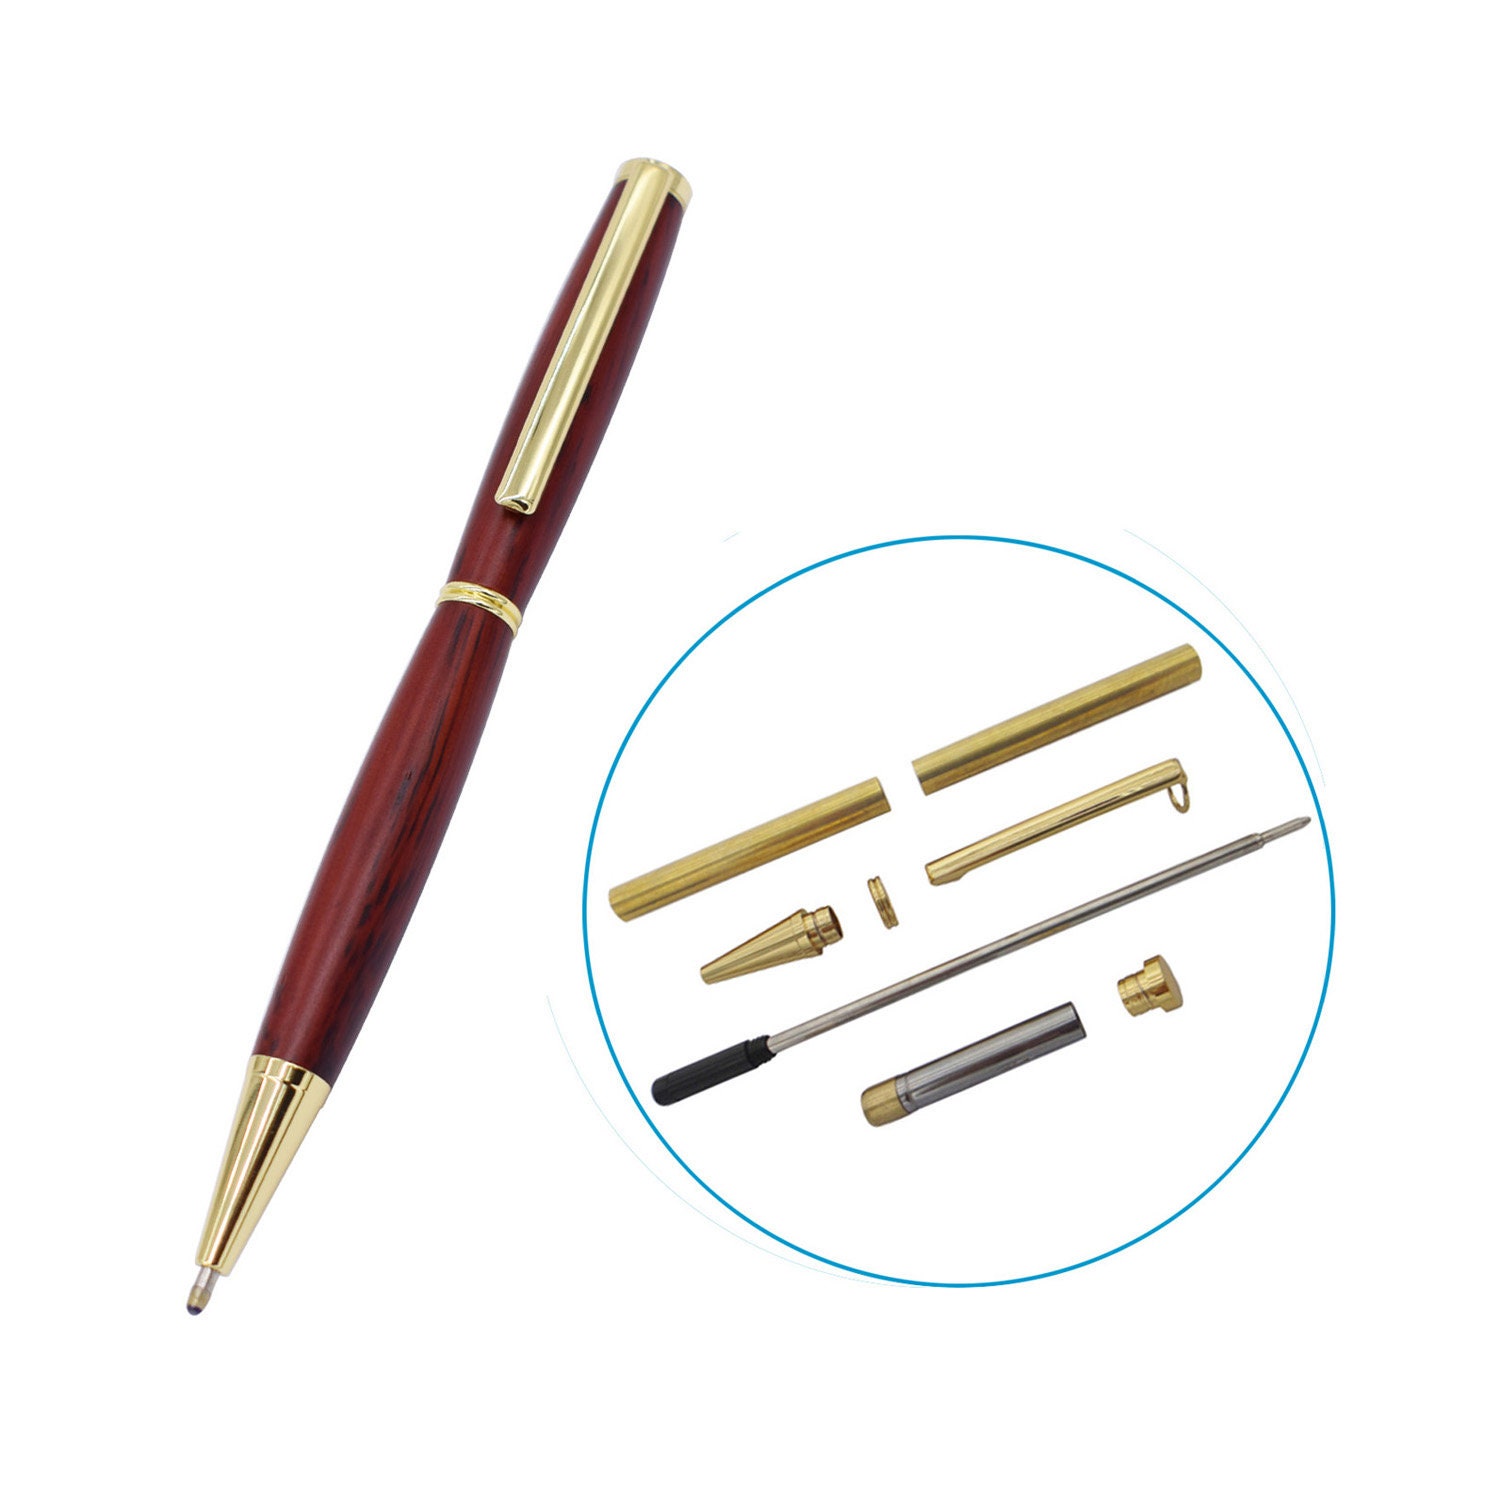 Eagle Click Pen Kits Bollpoint Pen Kit DIY Woodturning Kits Pen Making  BPCL371